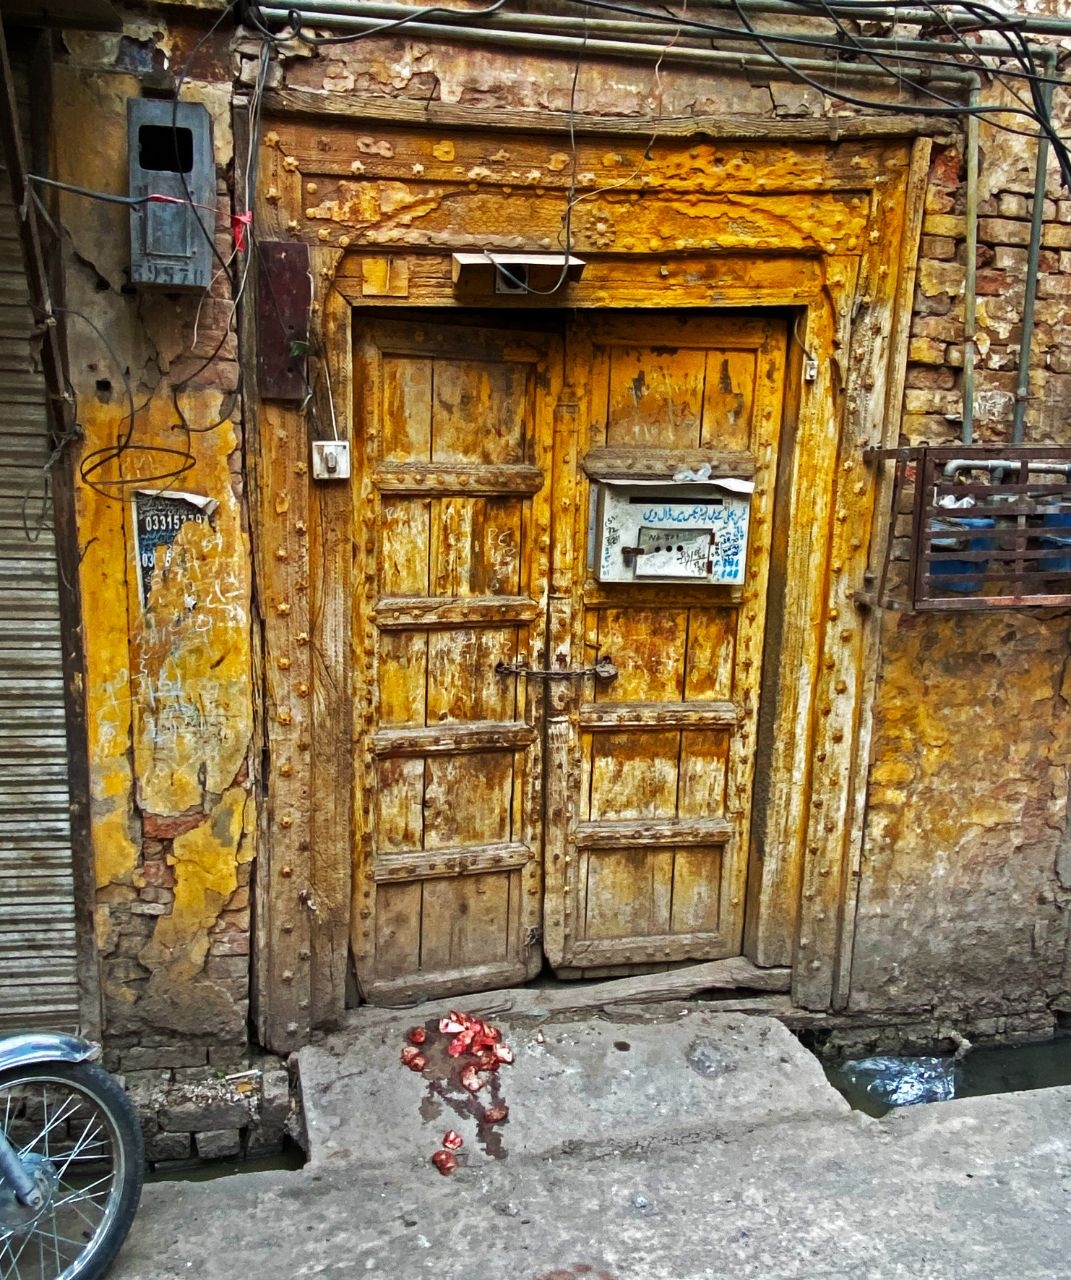 Архитектурные элементы создавшие уникальный образ Равалпинди Равалпинди, Пакистан